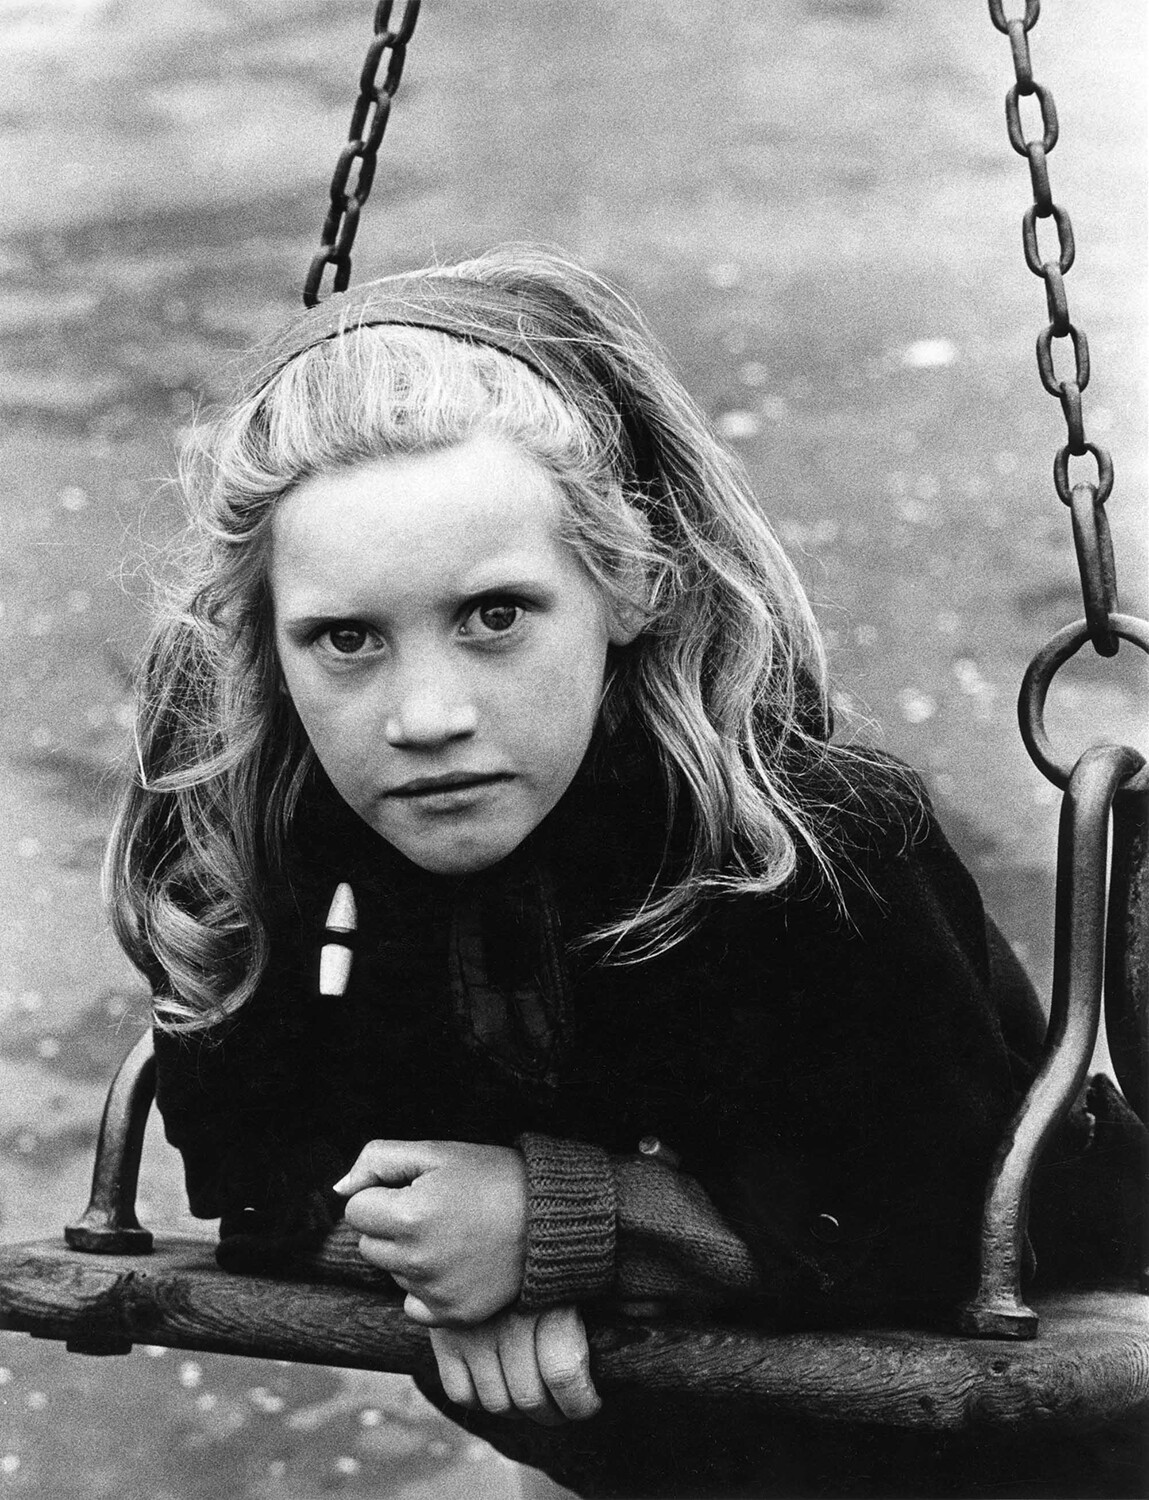 Девочка на качелях, Эдинбург, 1966. Фотограф Роберт Бломфилд